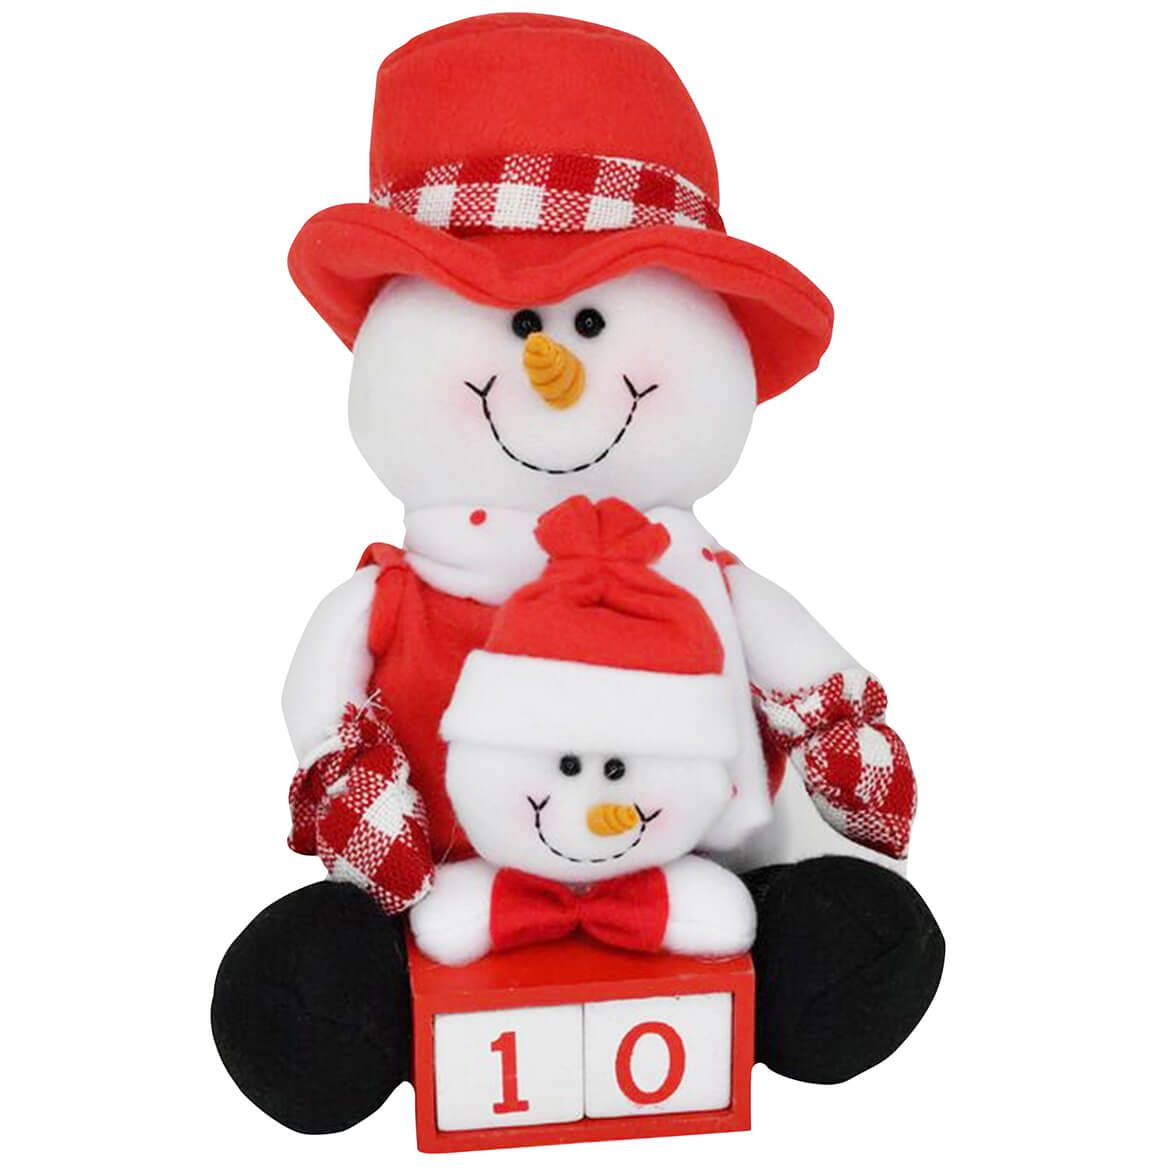 Snowman Calendar + '-' + 376074